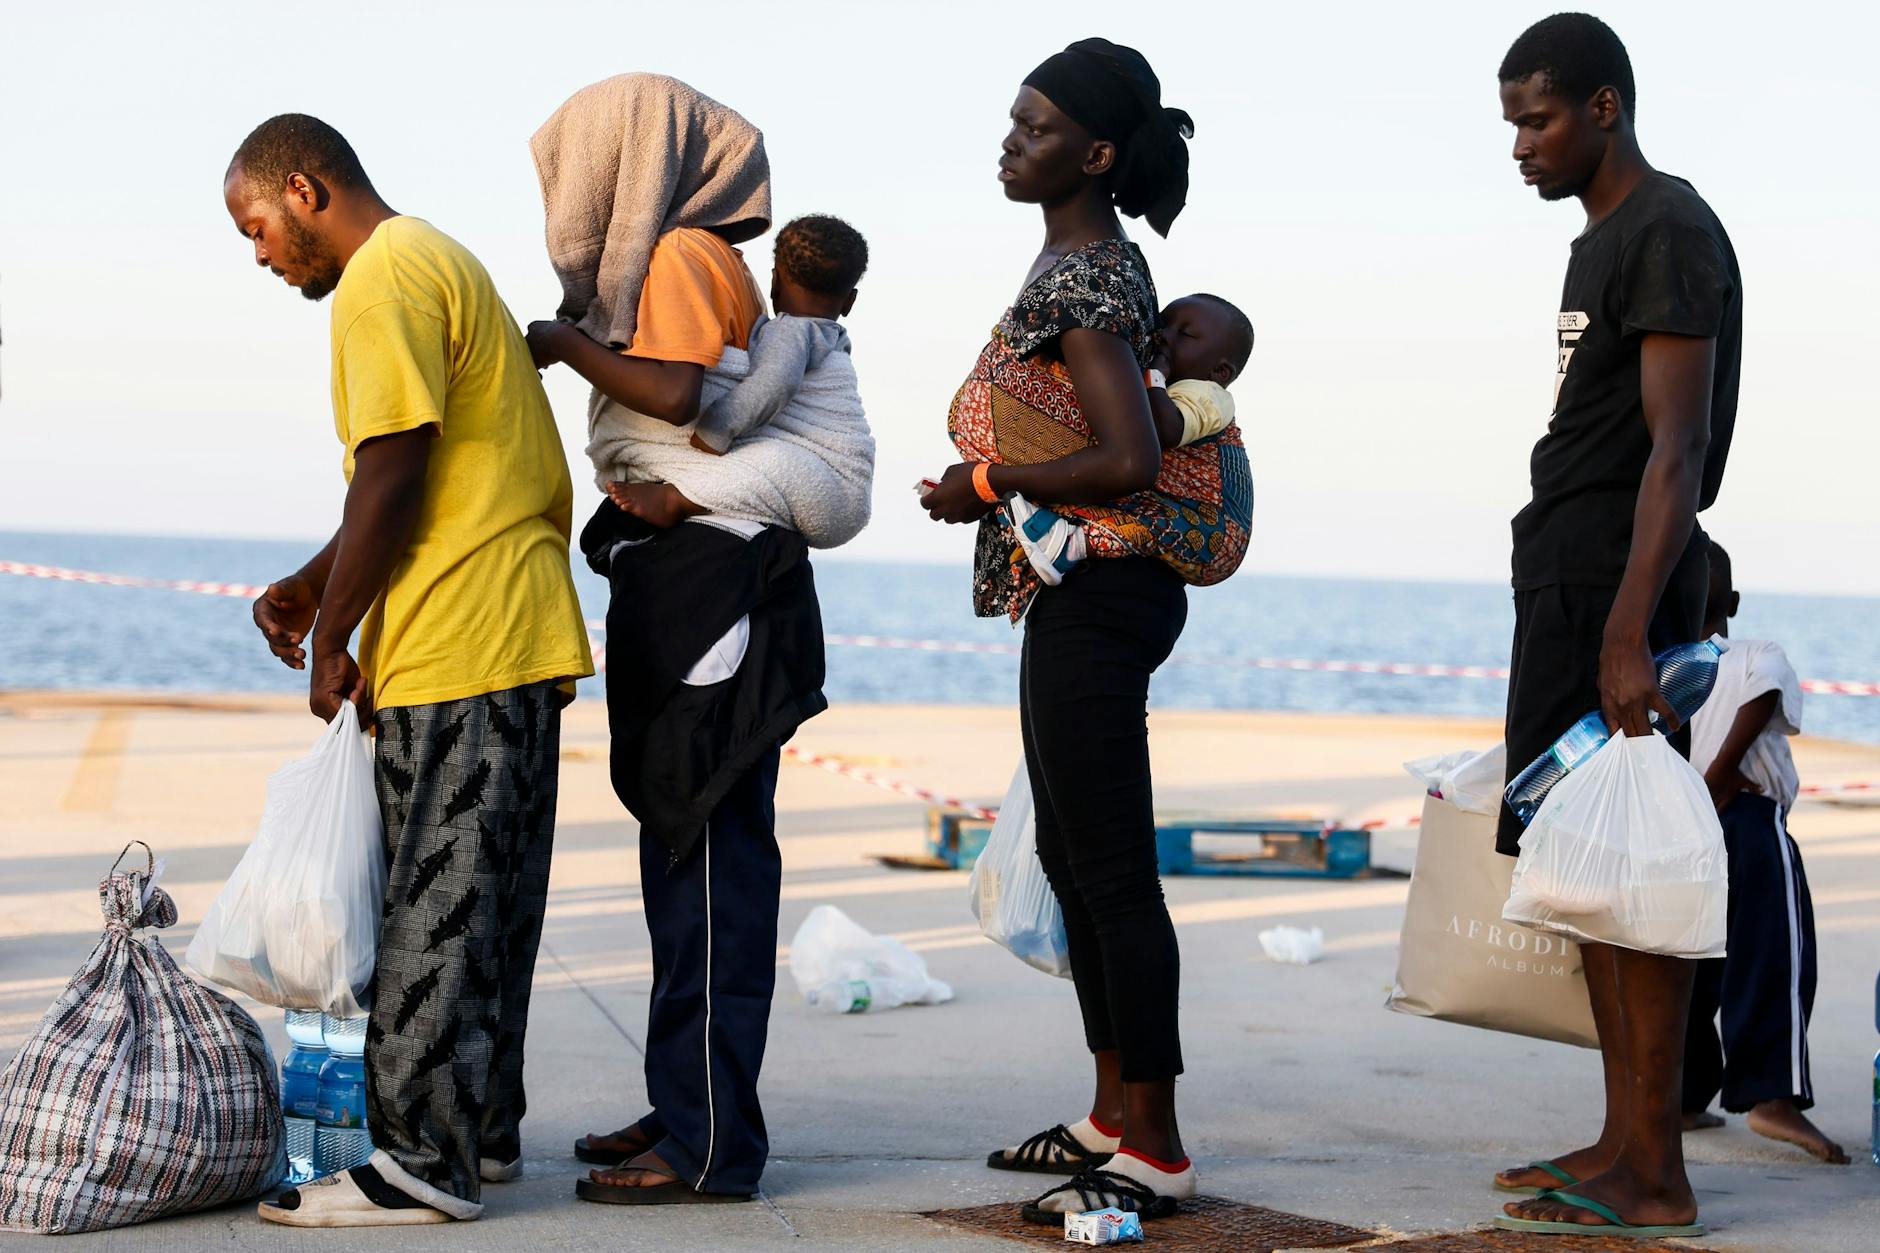 I migranti aspettano di essere trasferiti su una nave diretta dall'isola di Lampedusa verso l'Italia continentale.